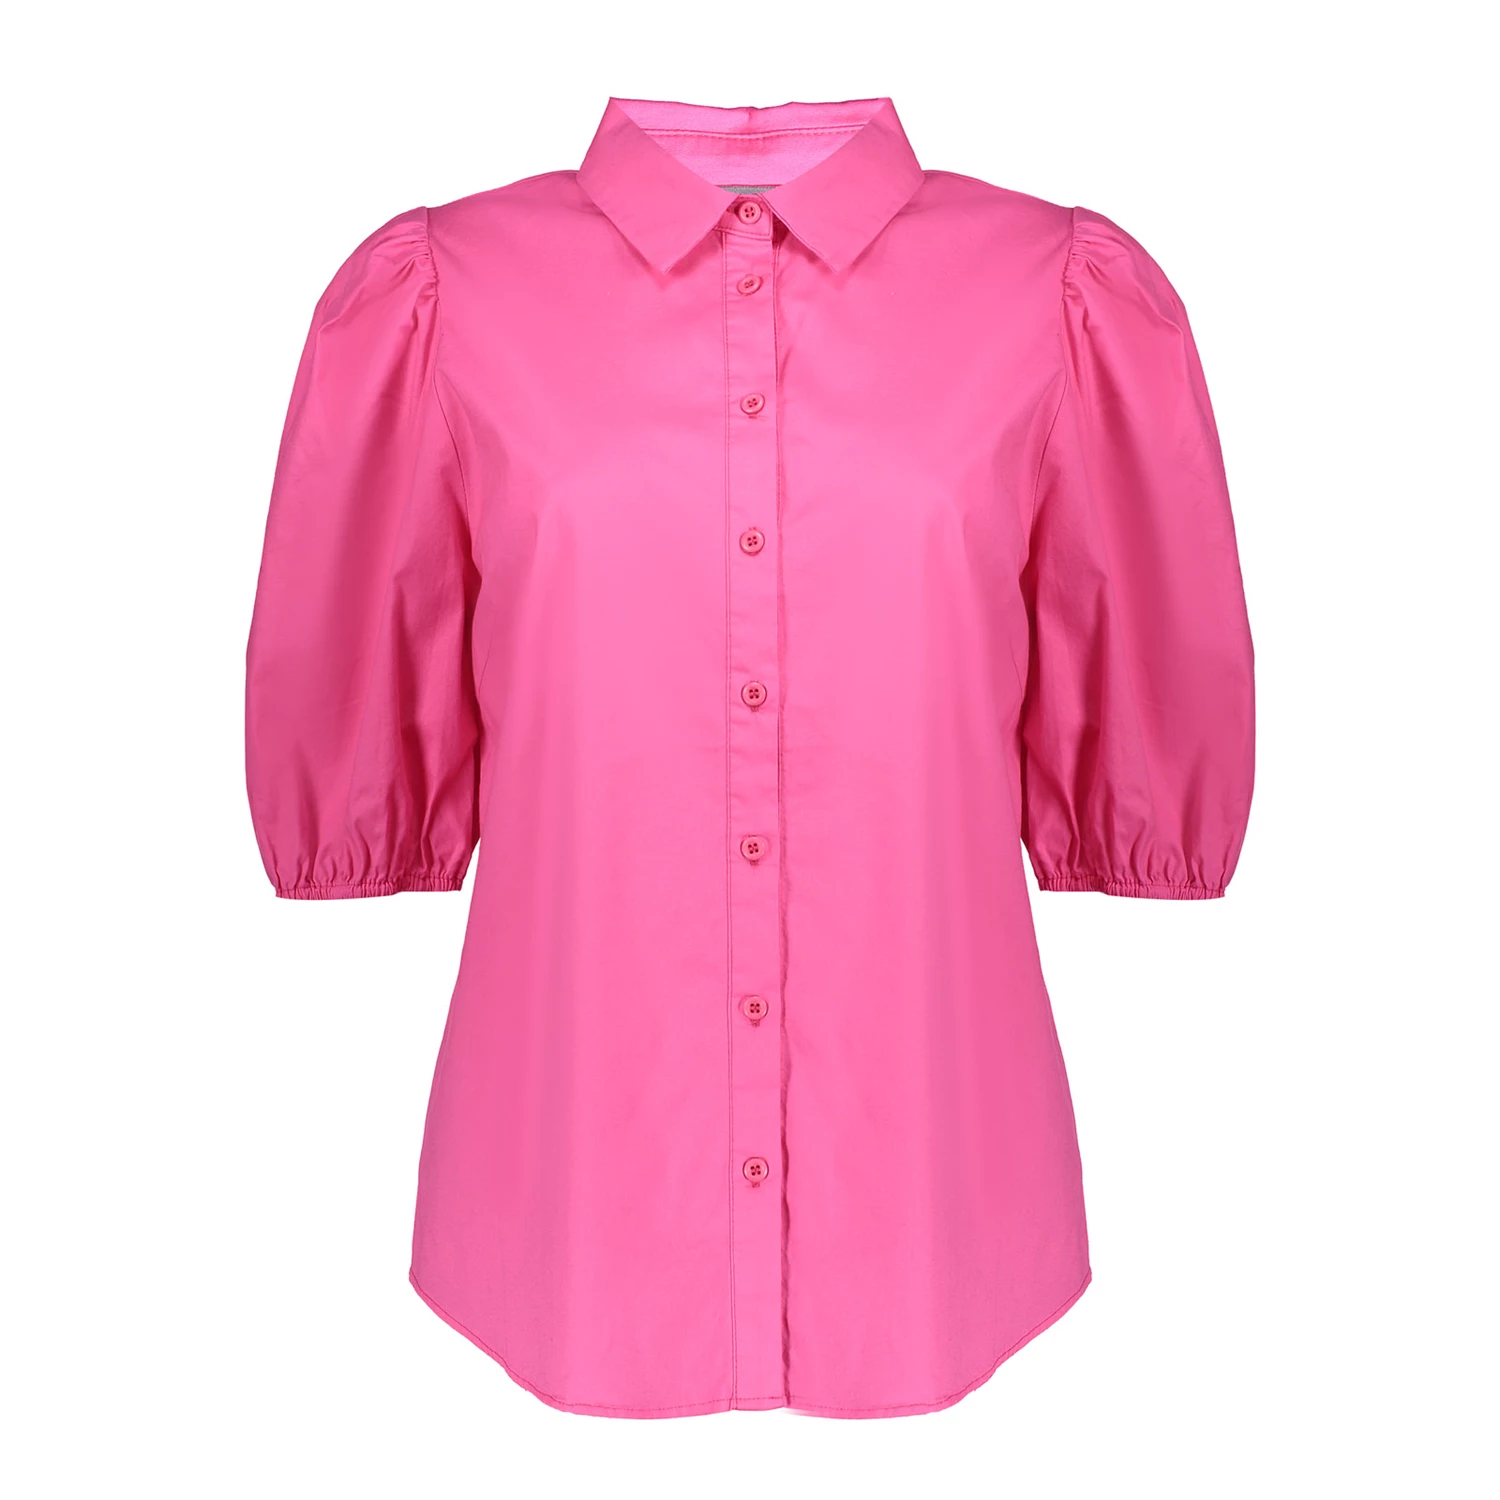 stapel ik draag kleding Laboratorium Geisha felgekleurde s/s blouse 33303-10 online op geishafashion.eu